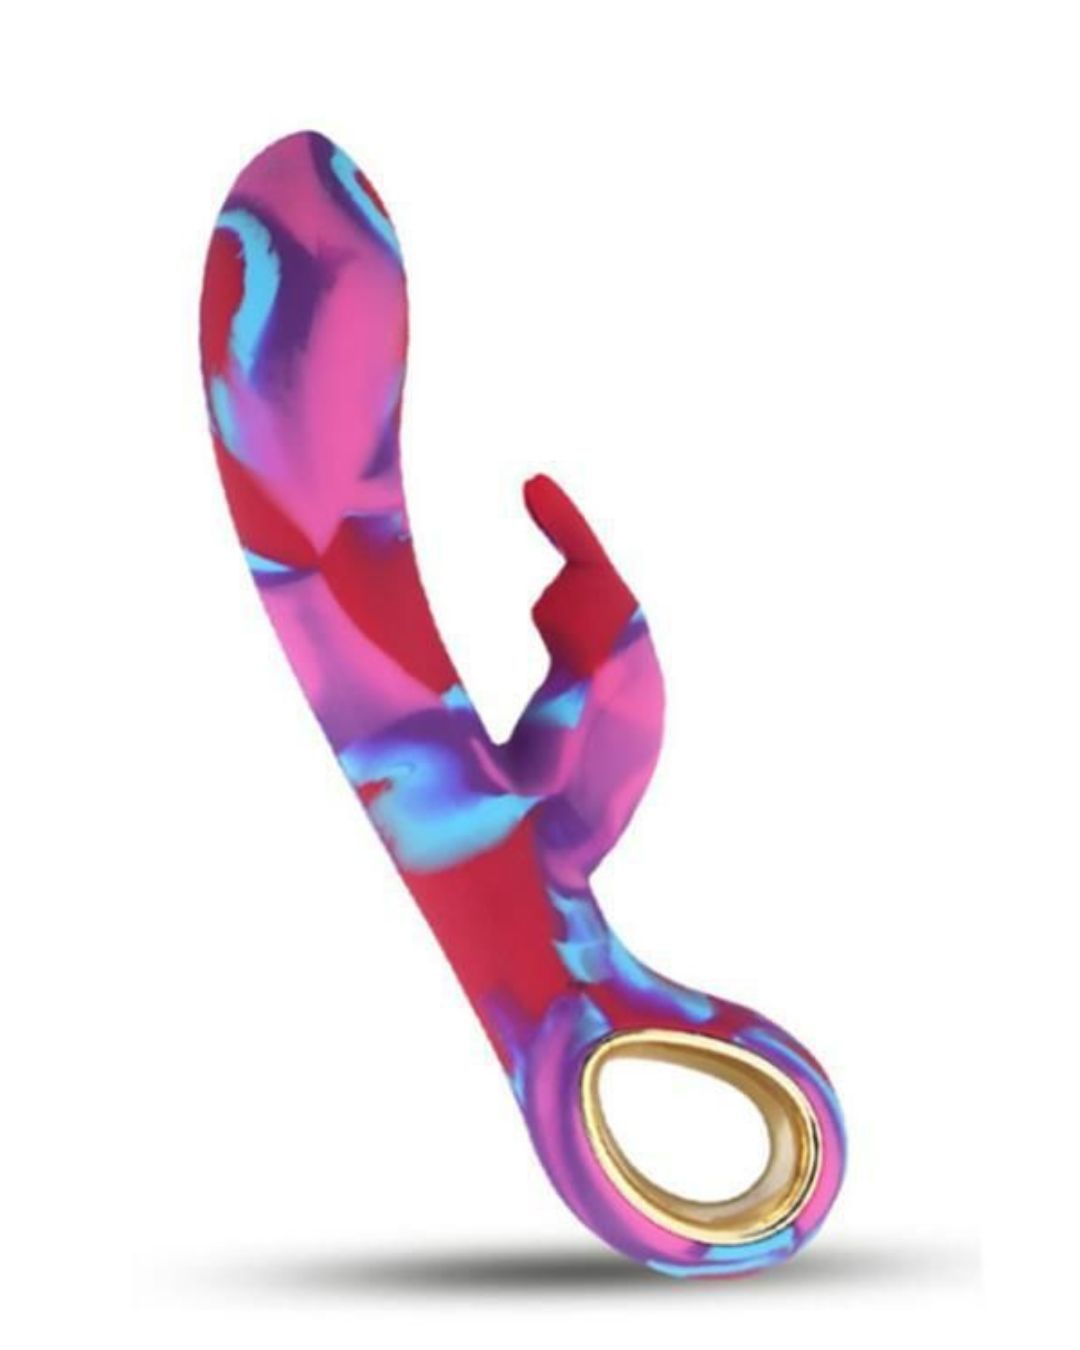 Tie Dye G Spot Rabbit Vibrator